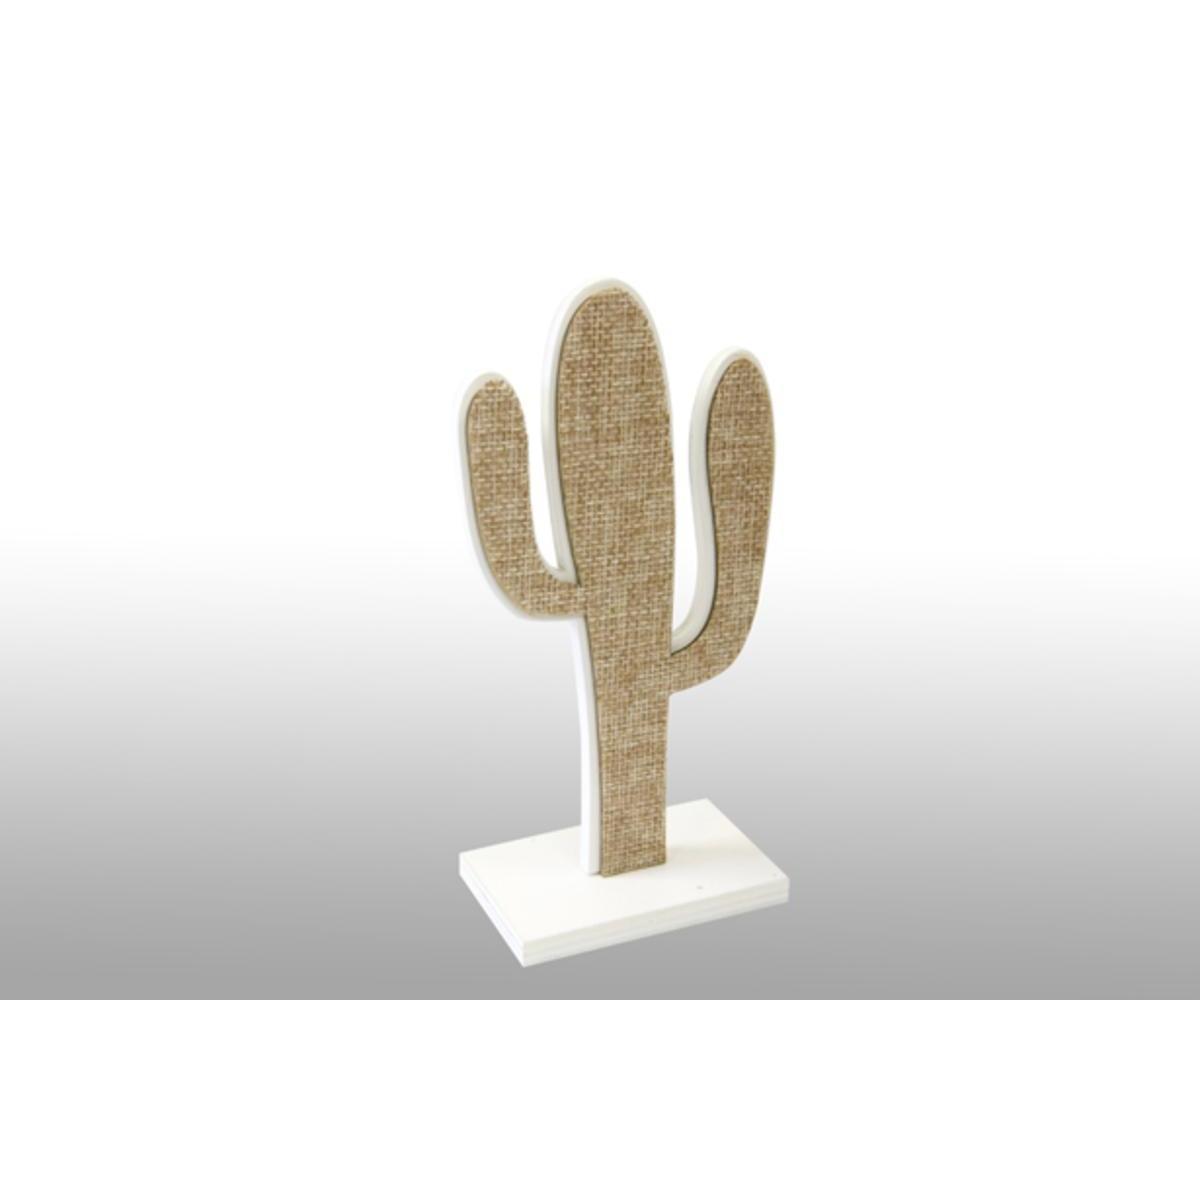 Cactus décor toile sur support - 7.7 x 15.5 x 4.5 cm - Beige